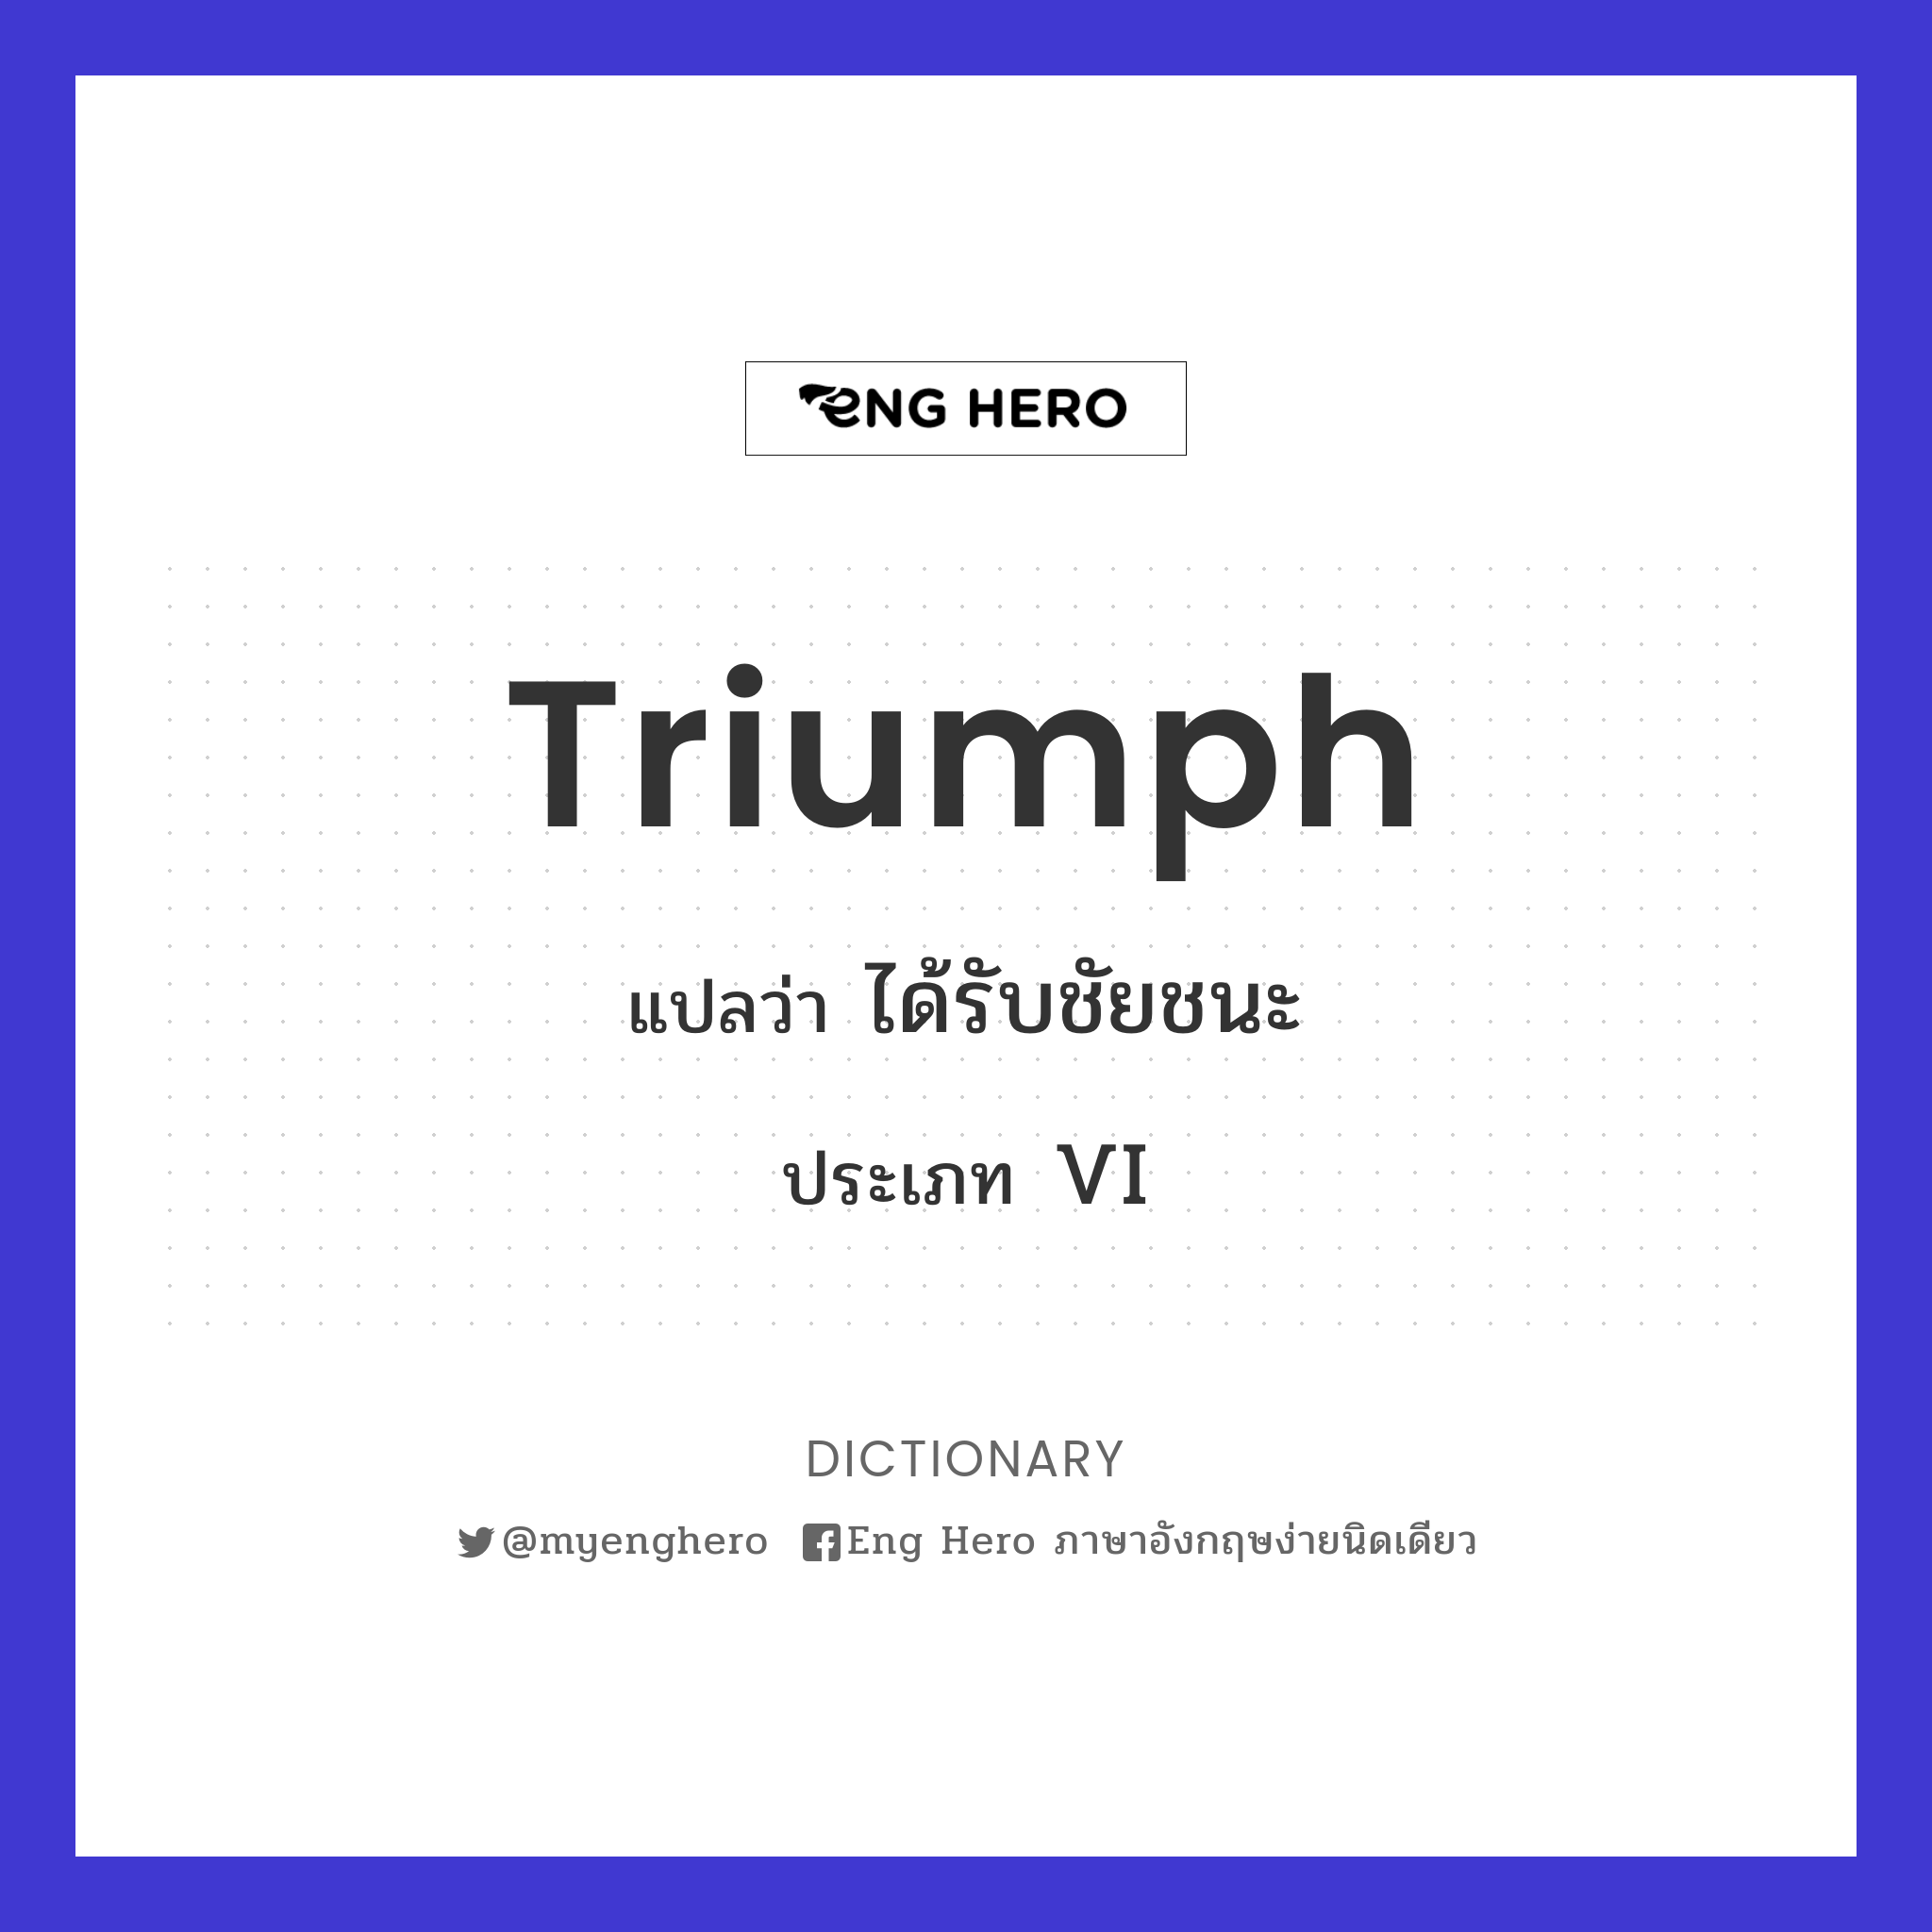 triumph